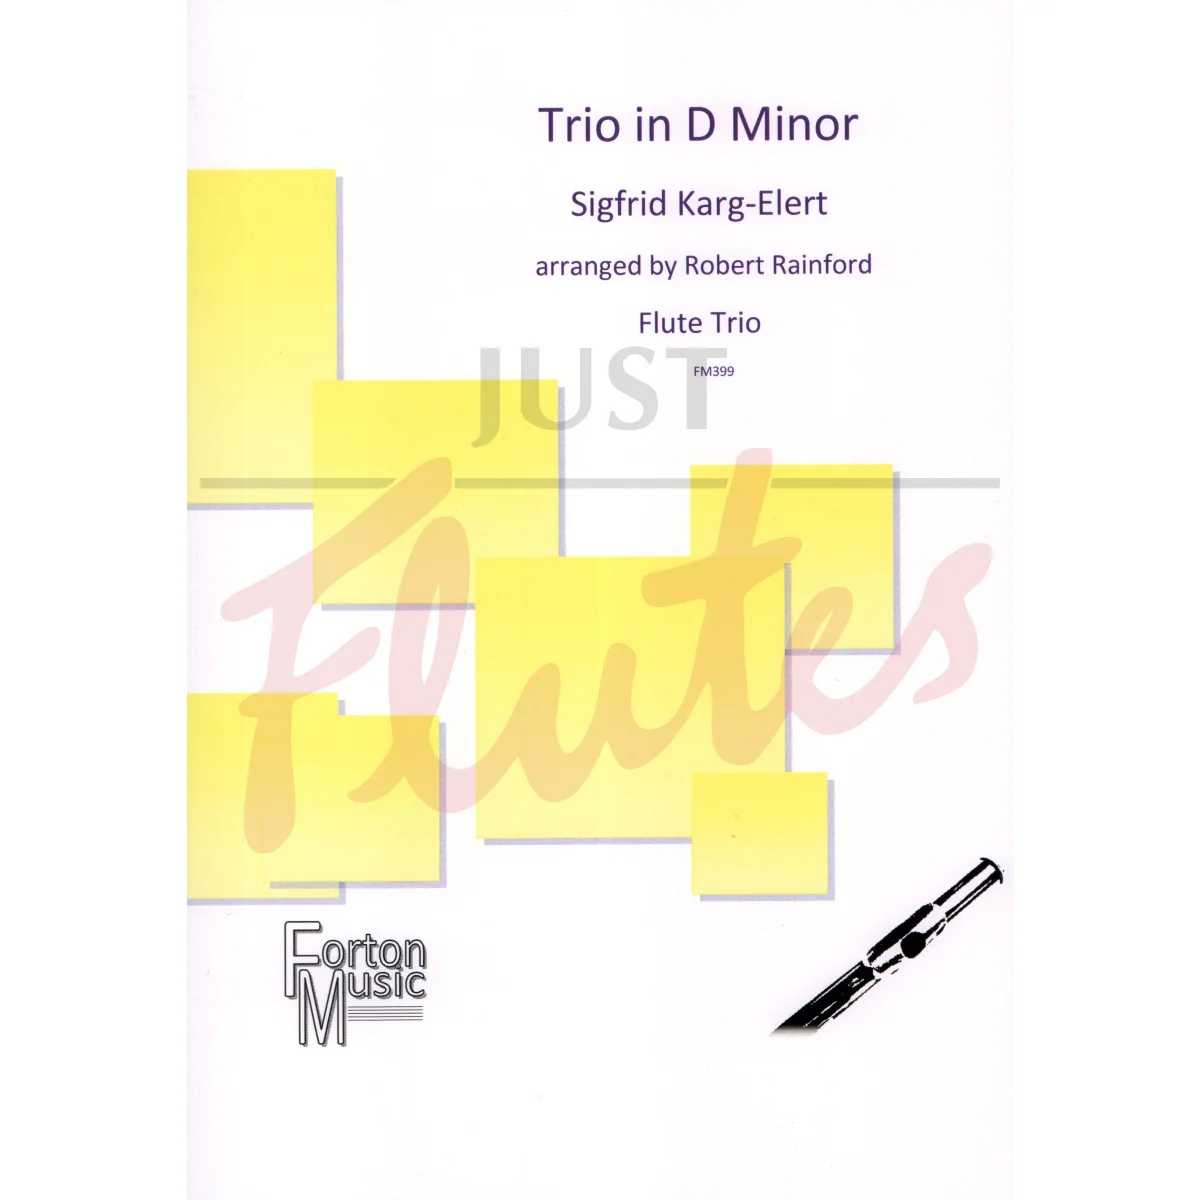 Trio in D minor for Flute Trio